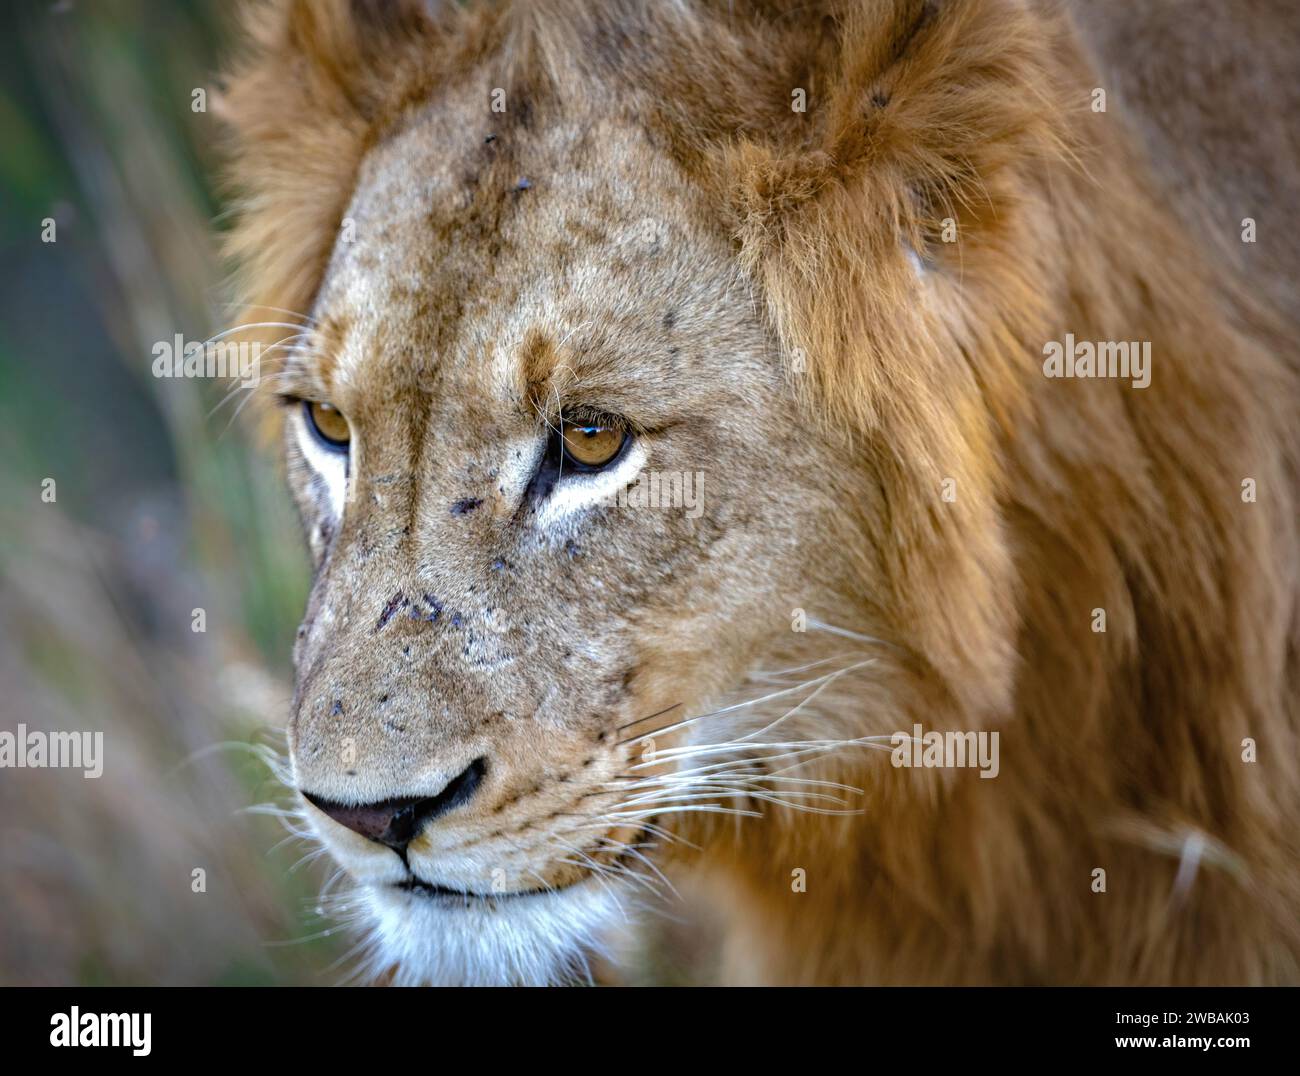 Un gros plan d'un lion majestueux dans son habitat naturel, regardant au loin. Banque D'Images